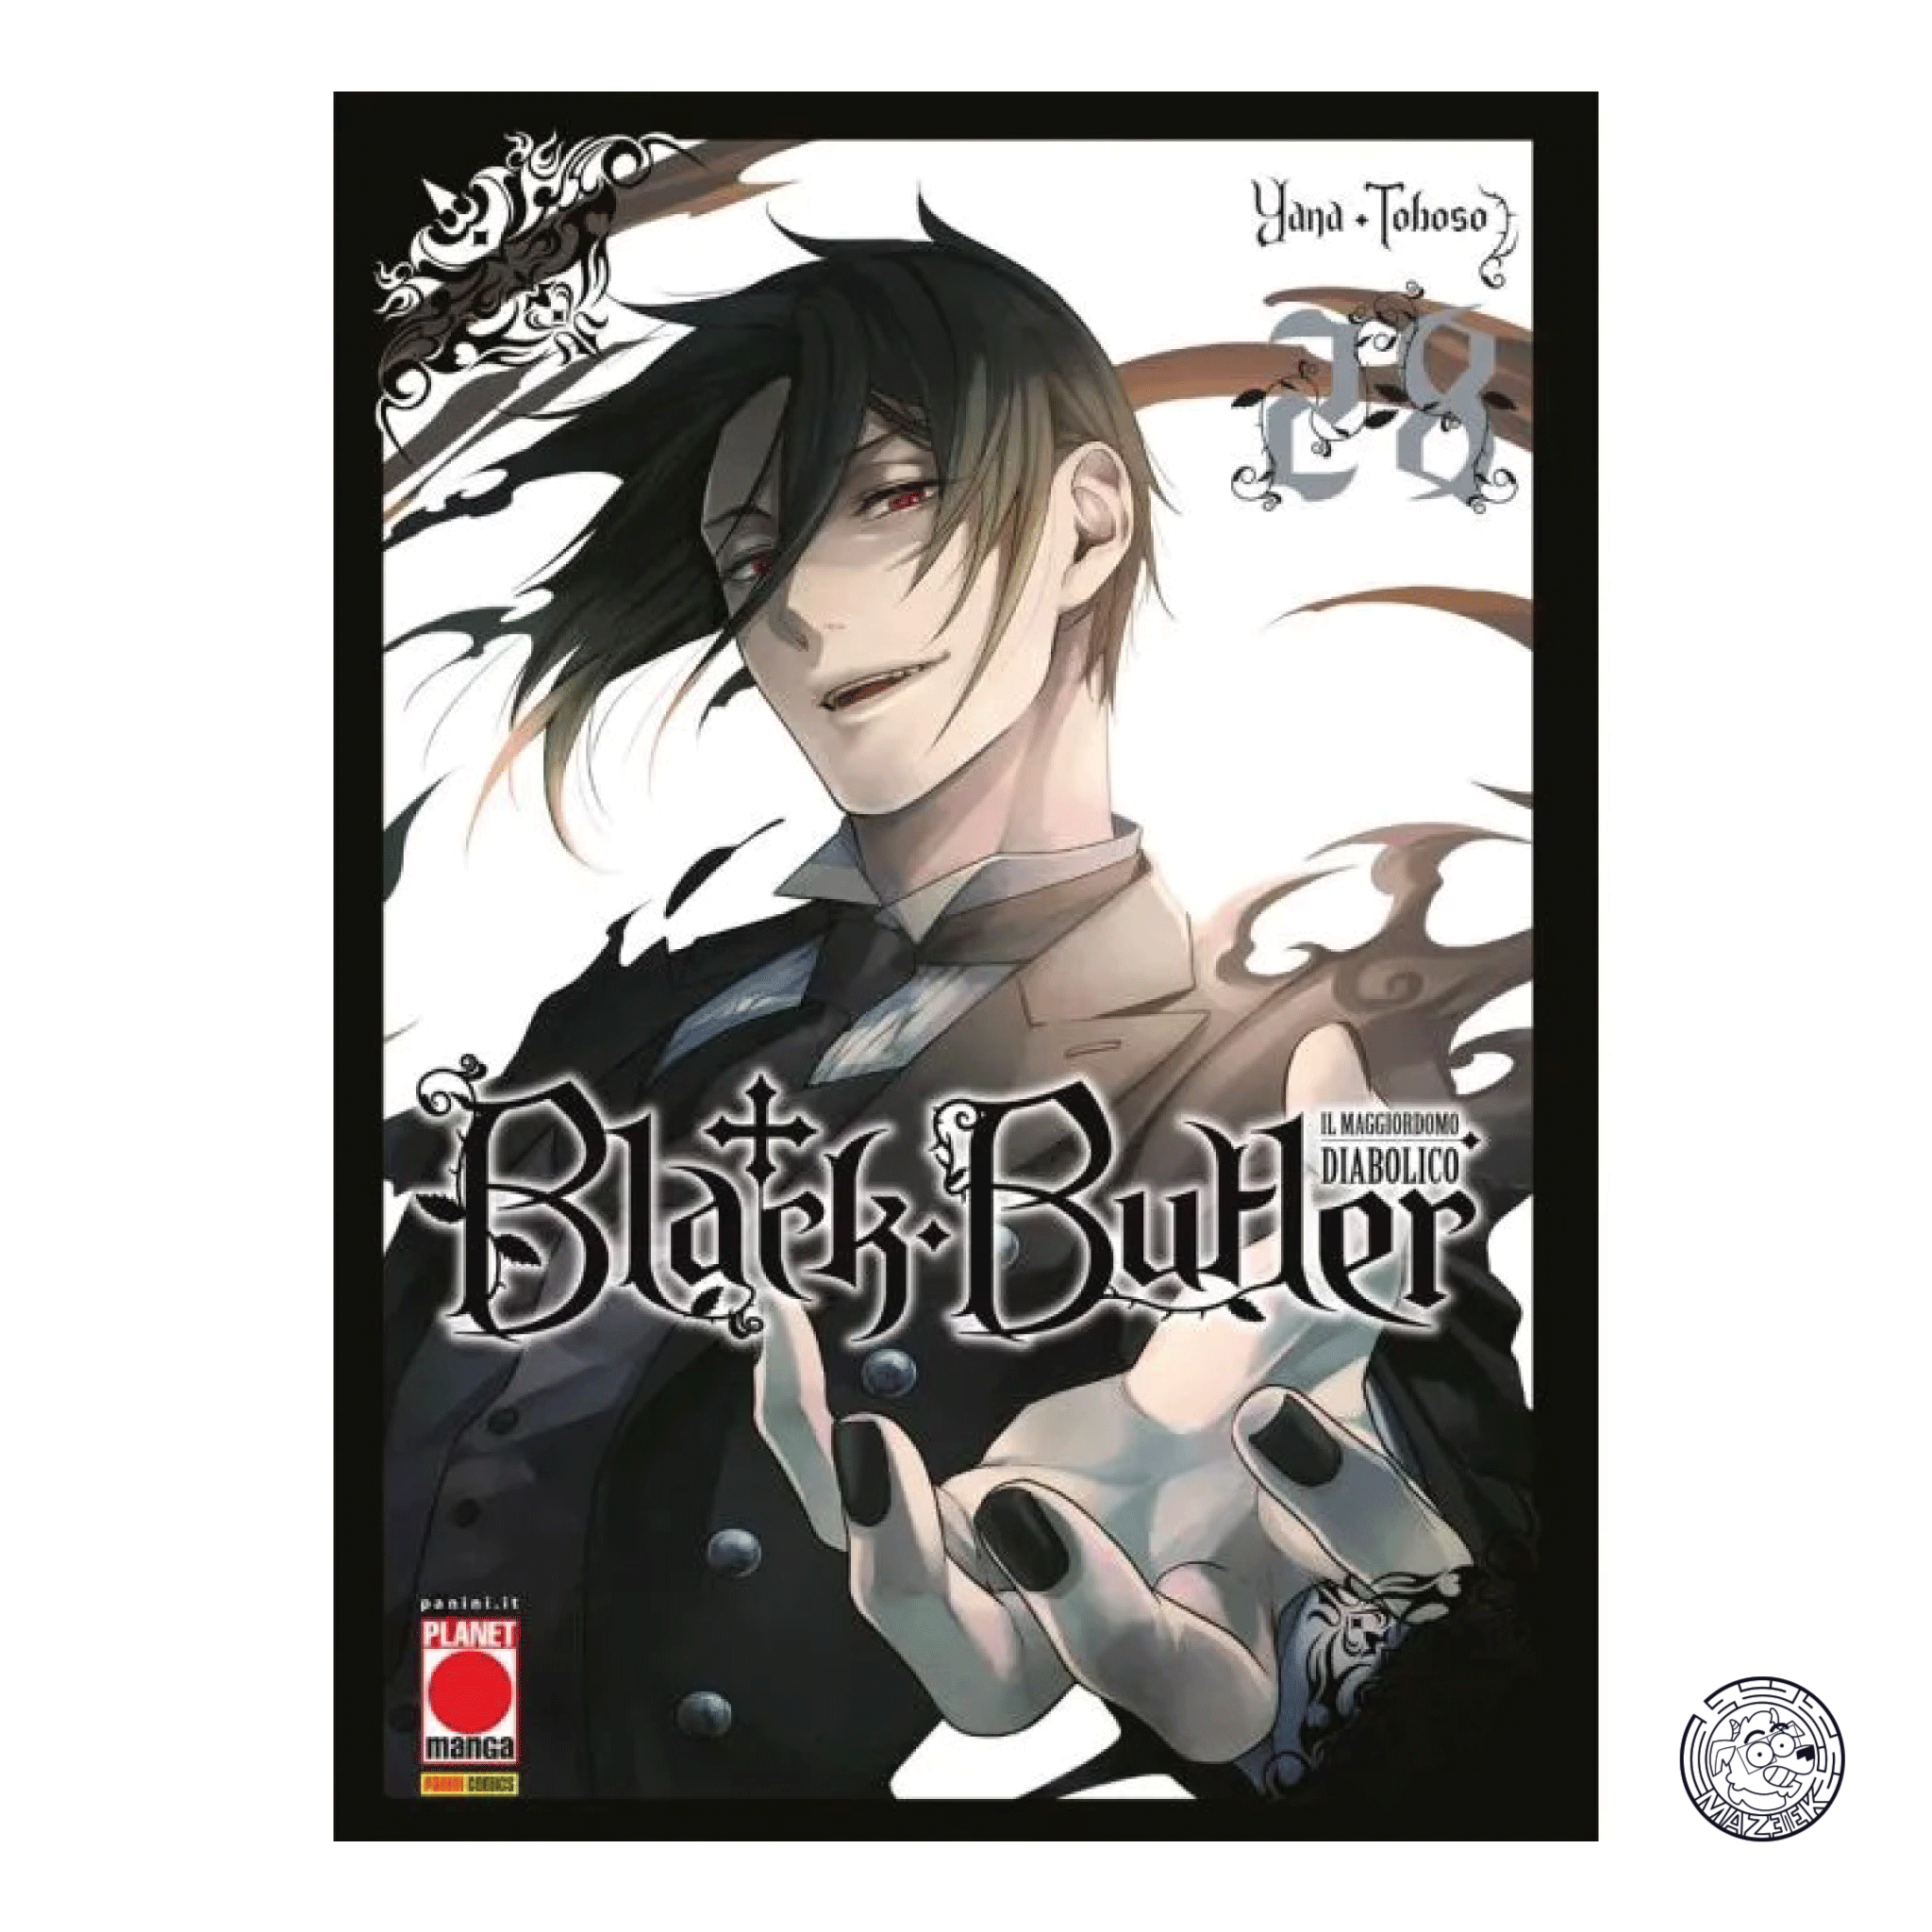 Black Butler - il Maggiordomo Diabolico 28 - Prima Ristampa